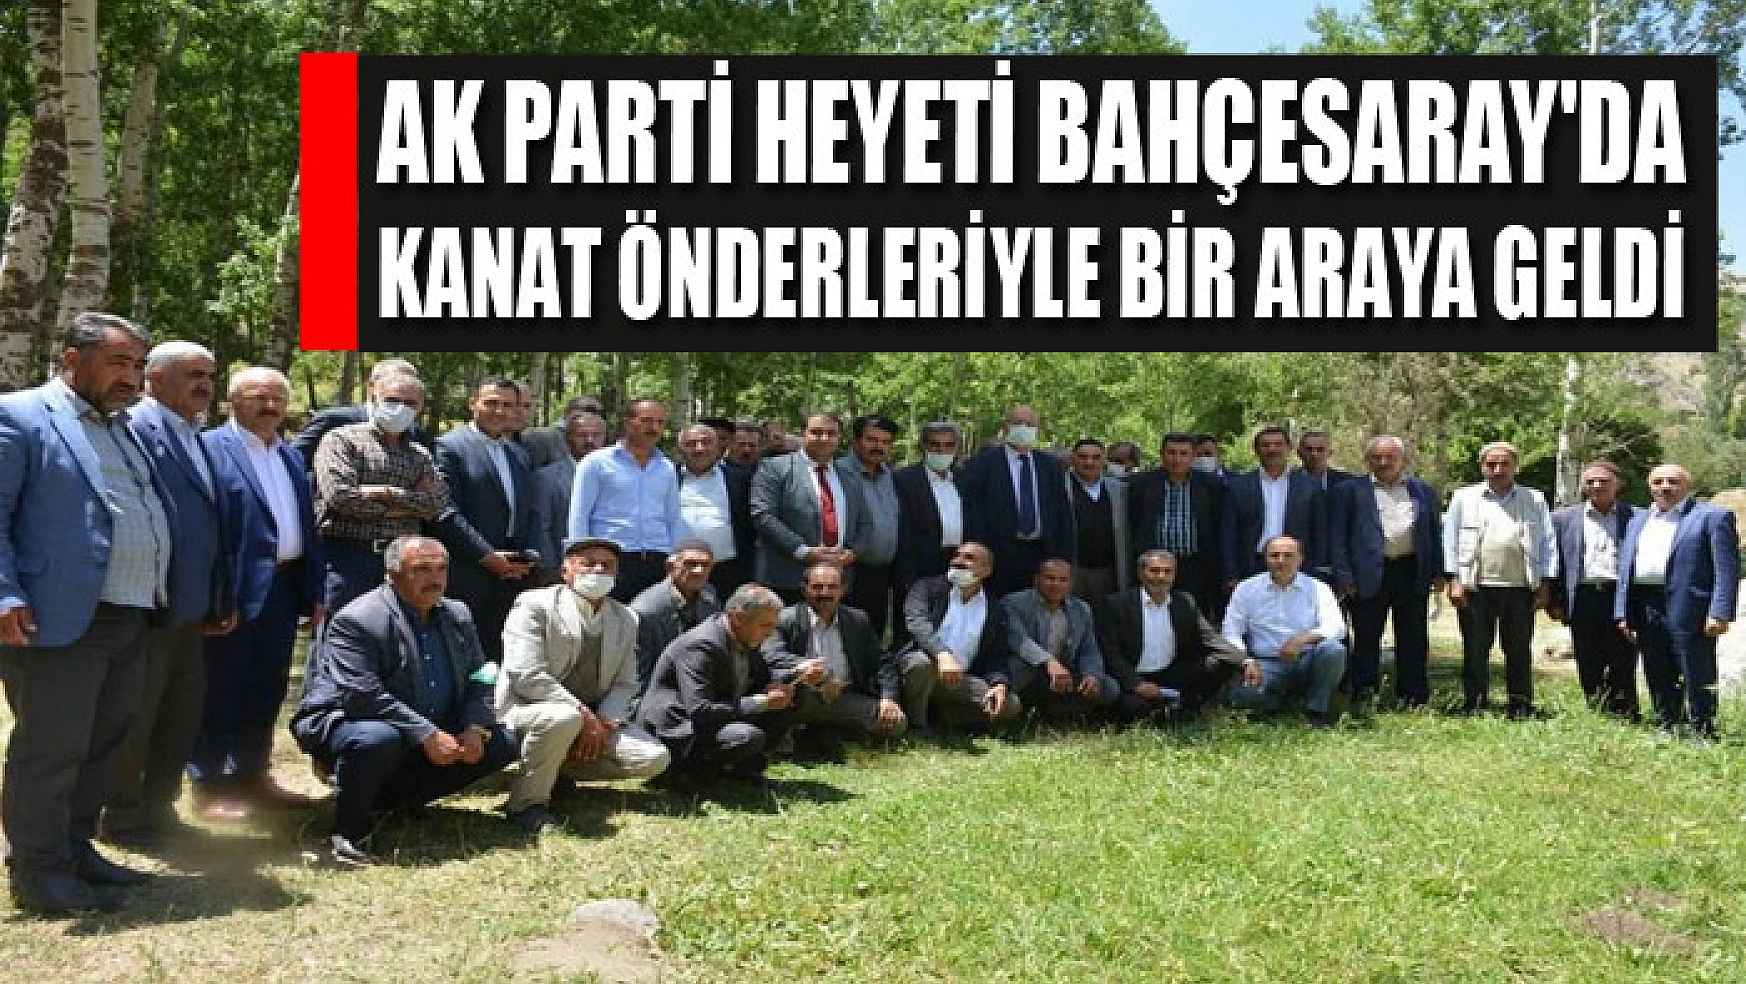 AK Parti heyeti Bahçesaray'da kanat önderleriyle bir araya geldi